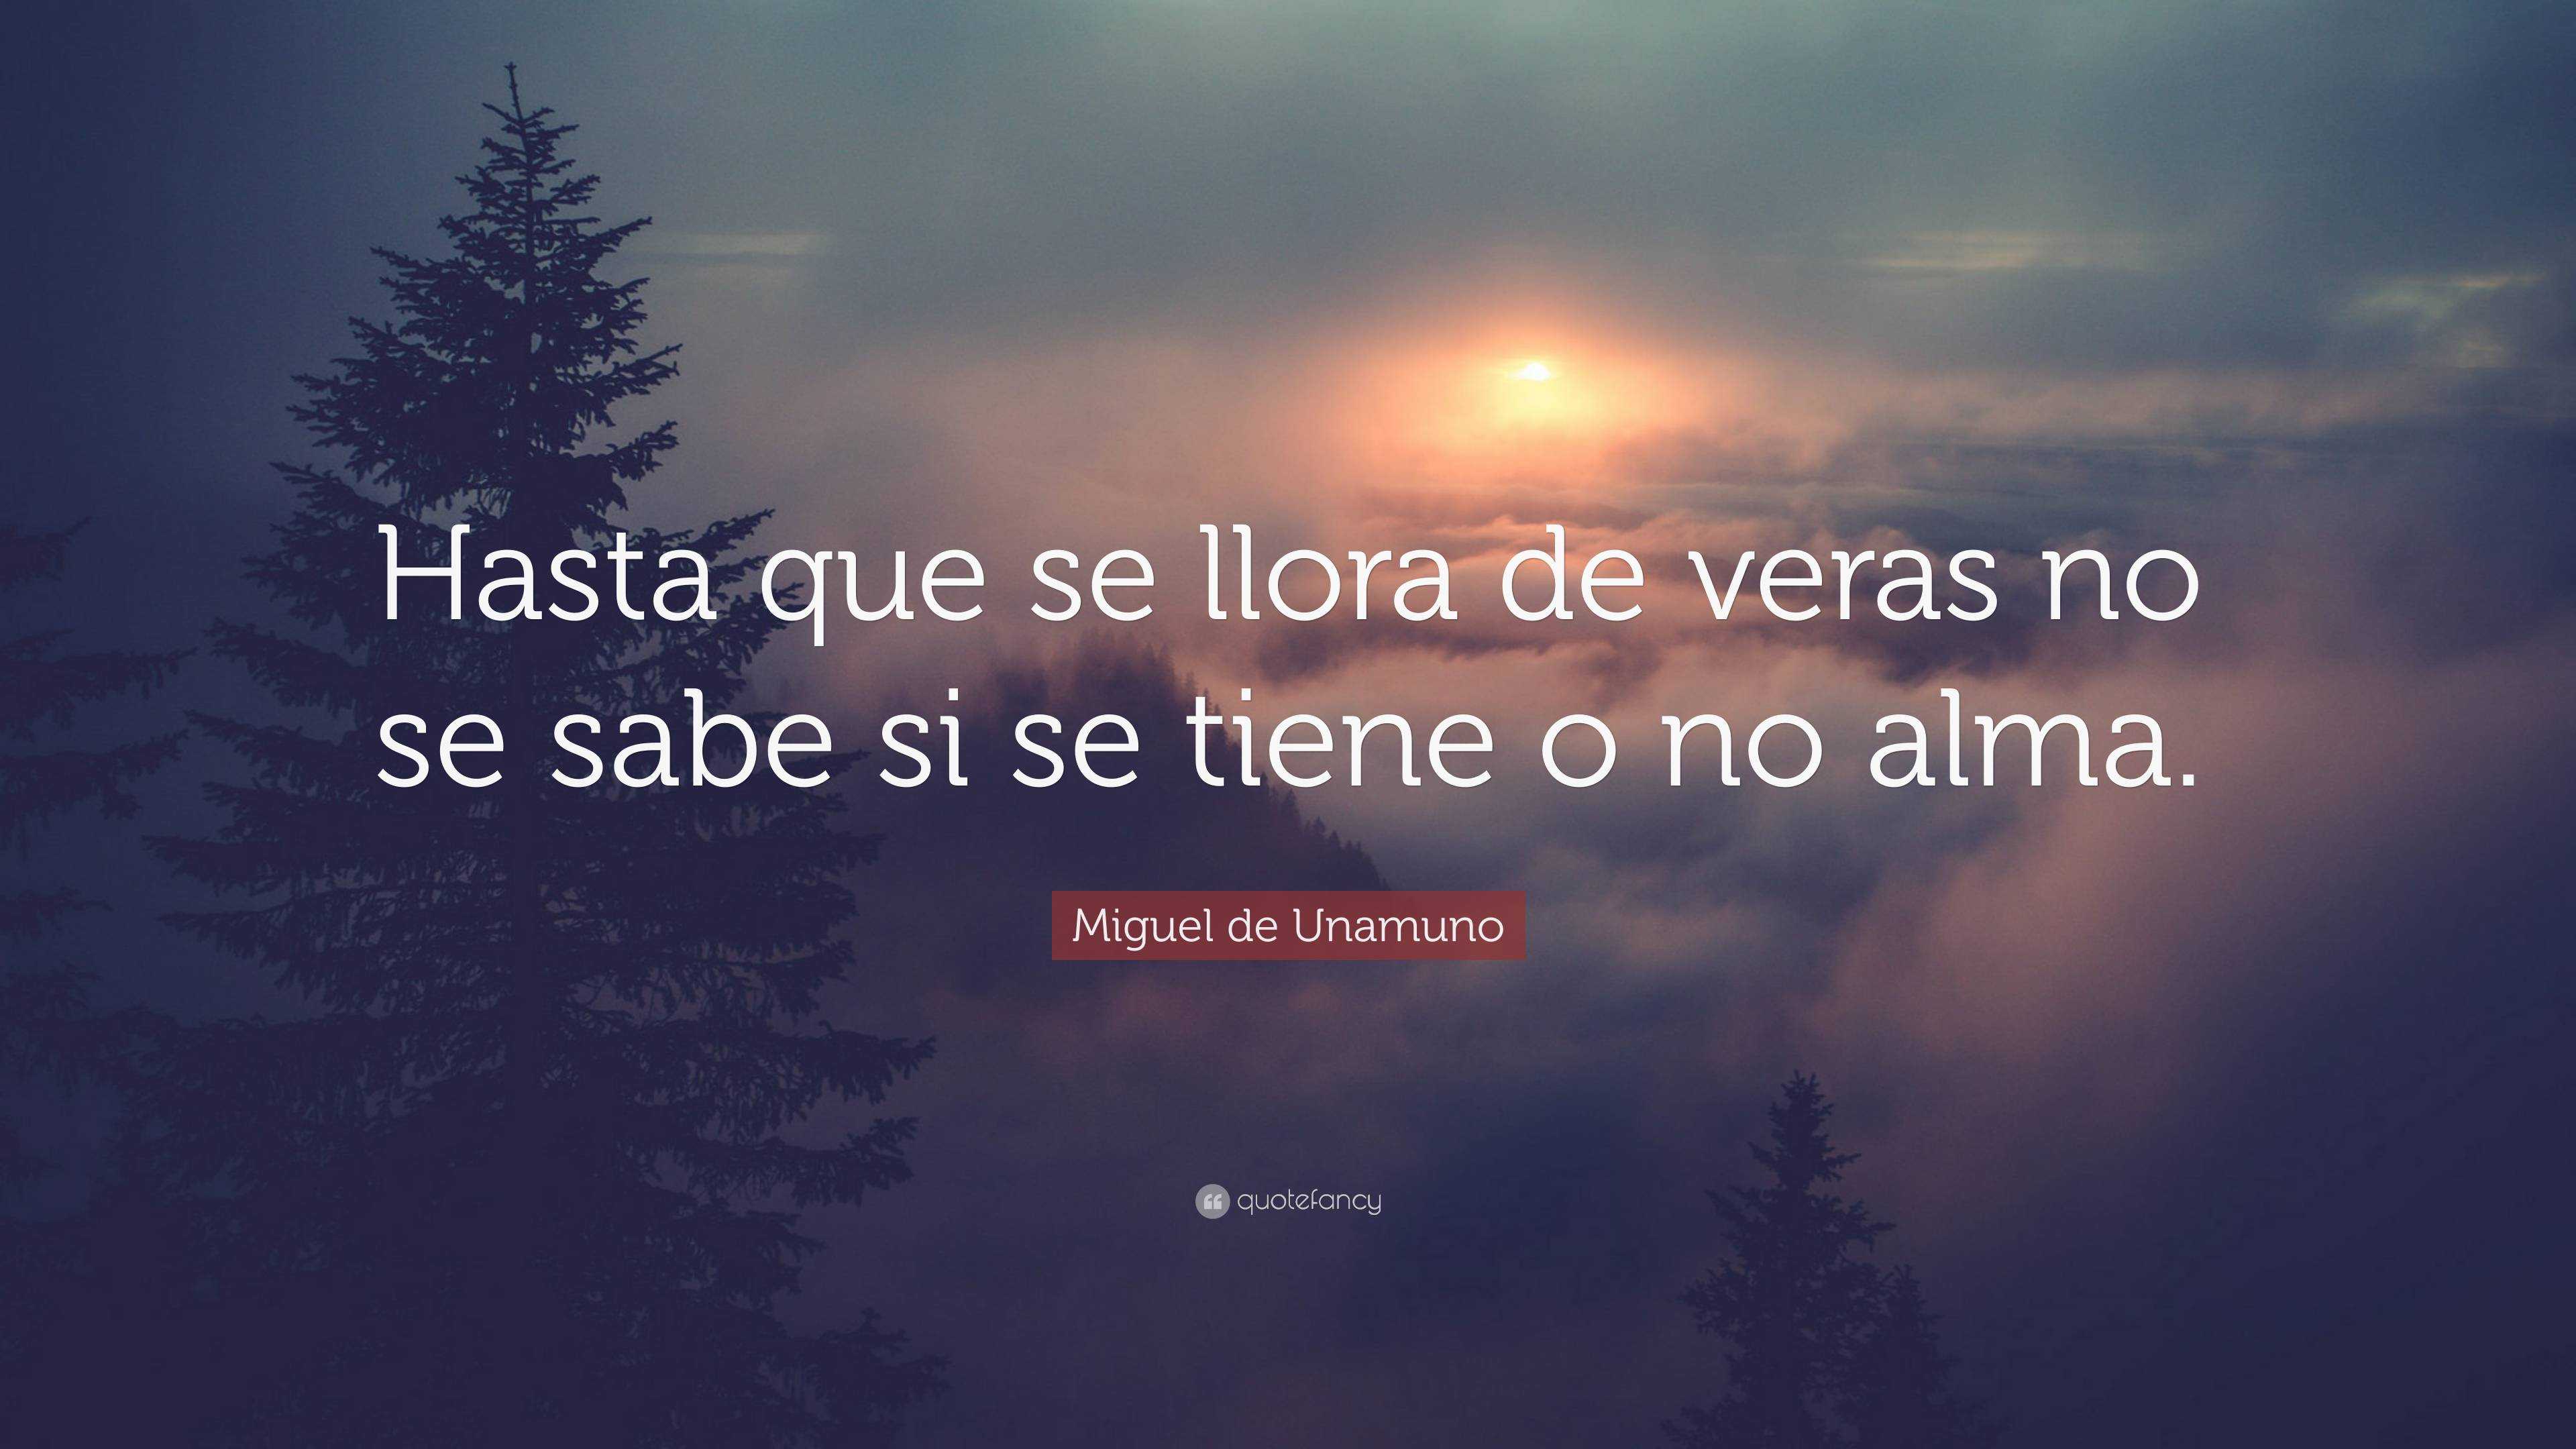 Miguel de Unamuno Quote: “Hasta que se llora de veras no se sabe si se ...